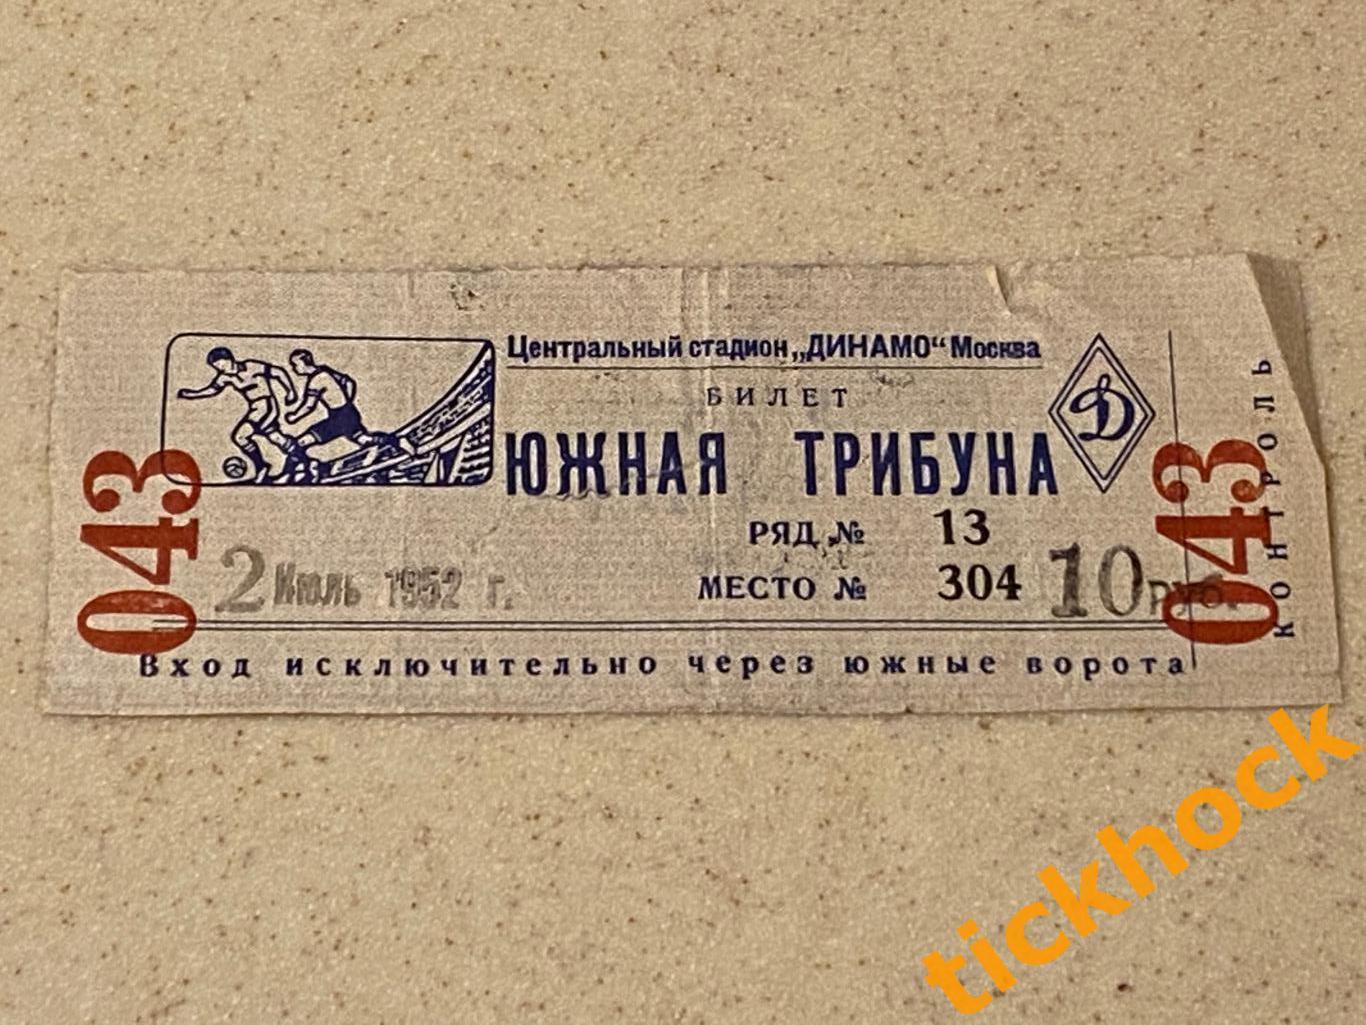 Динамо Москва - Румыния (сборная) 02.07.1952-- билет Южная трибуна